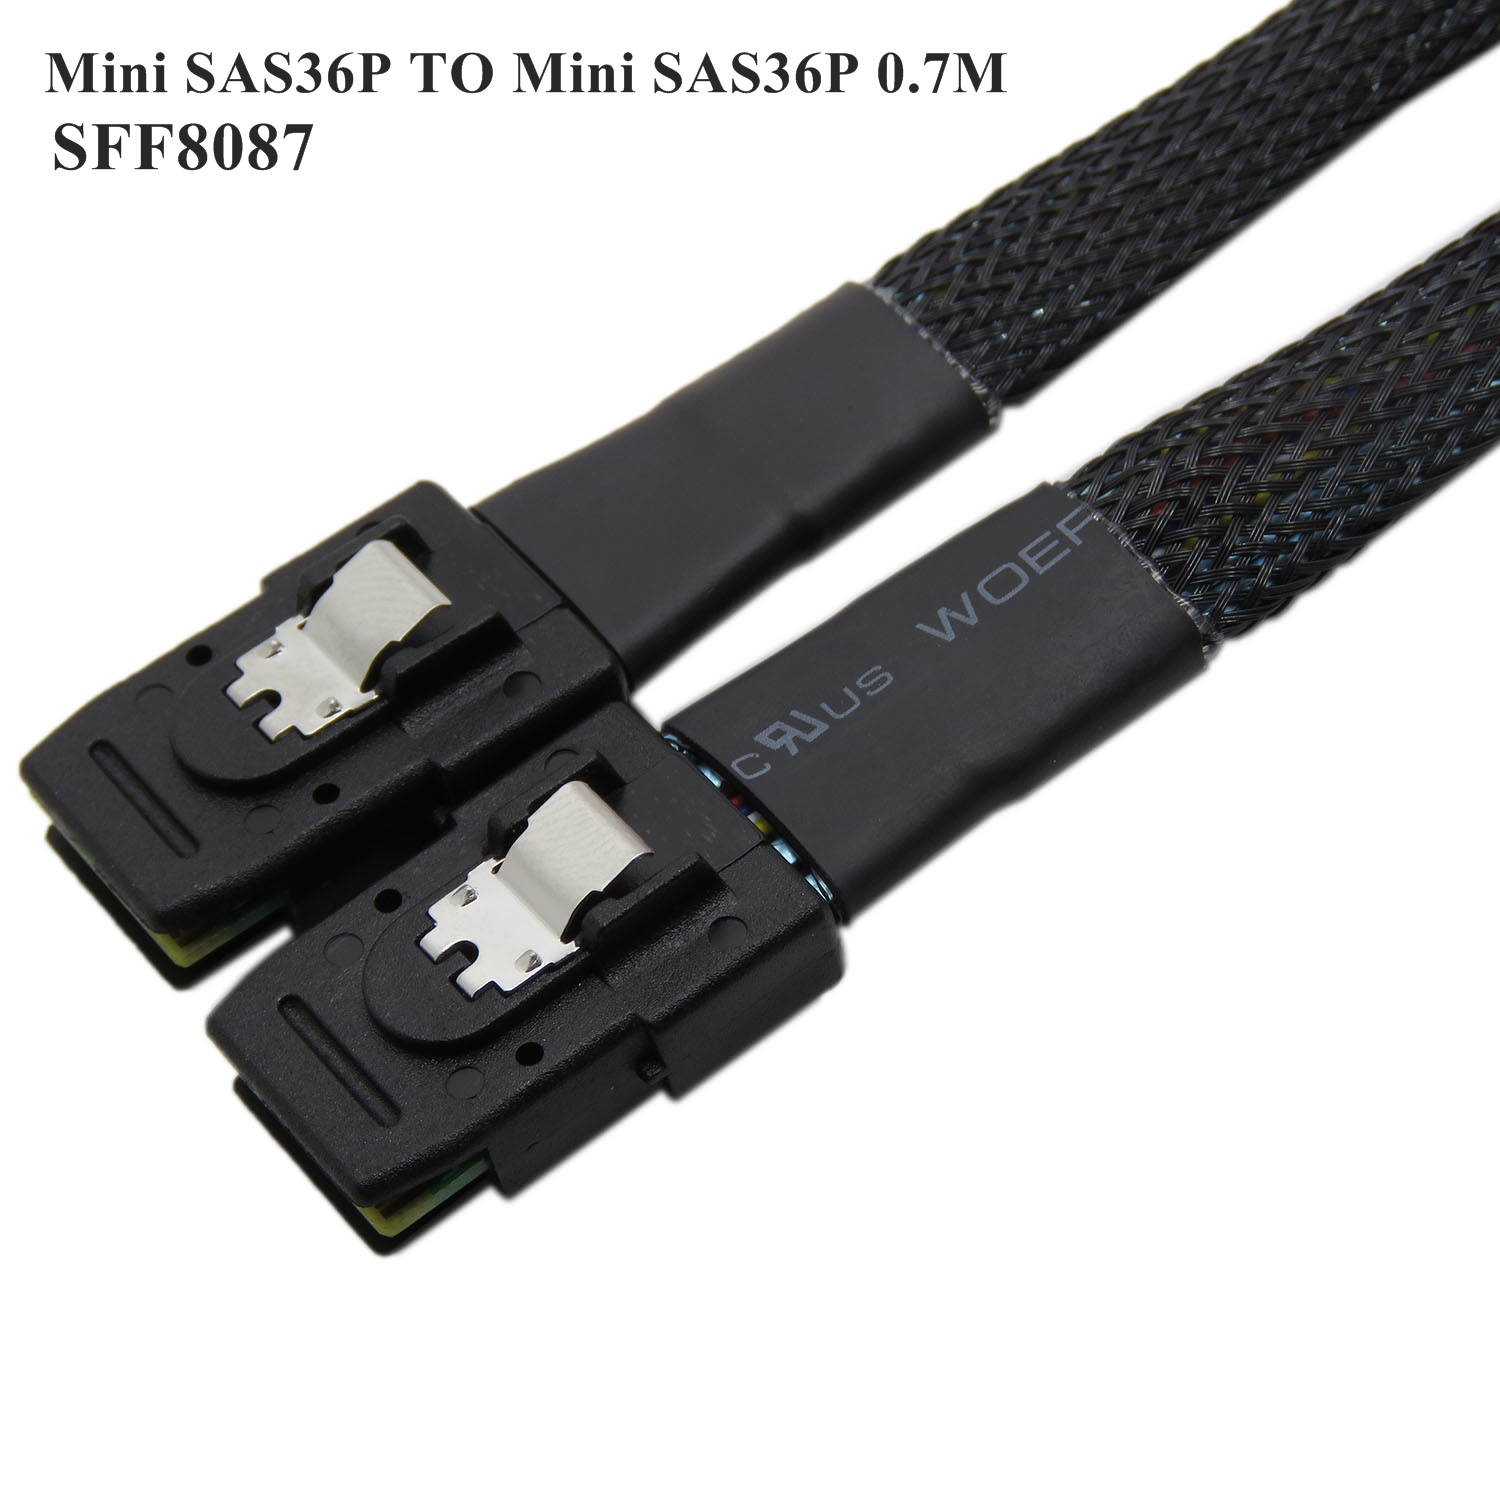 MFU SFF-8087 to SFF-8087 Cable Mini SAS 36P to Mini SAS 36P SF-001